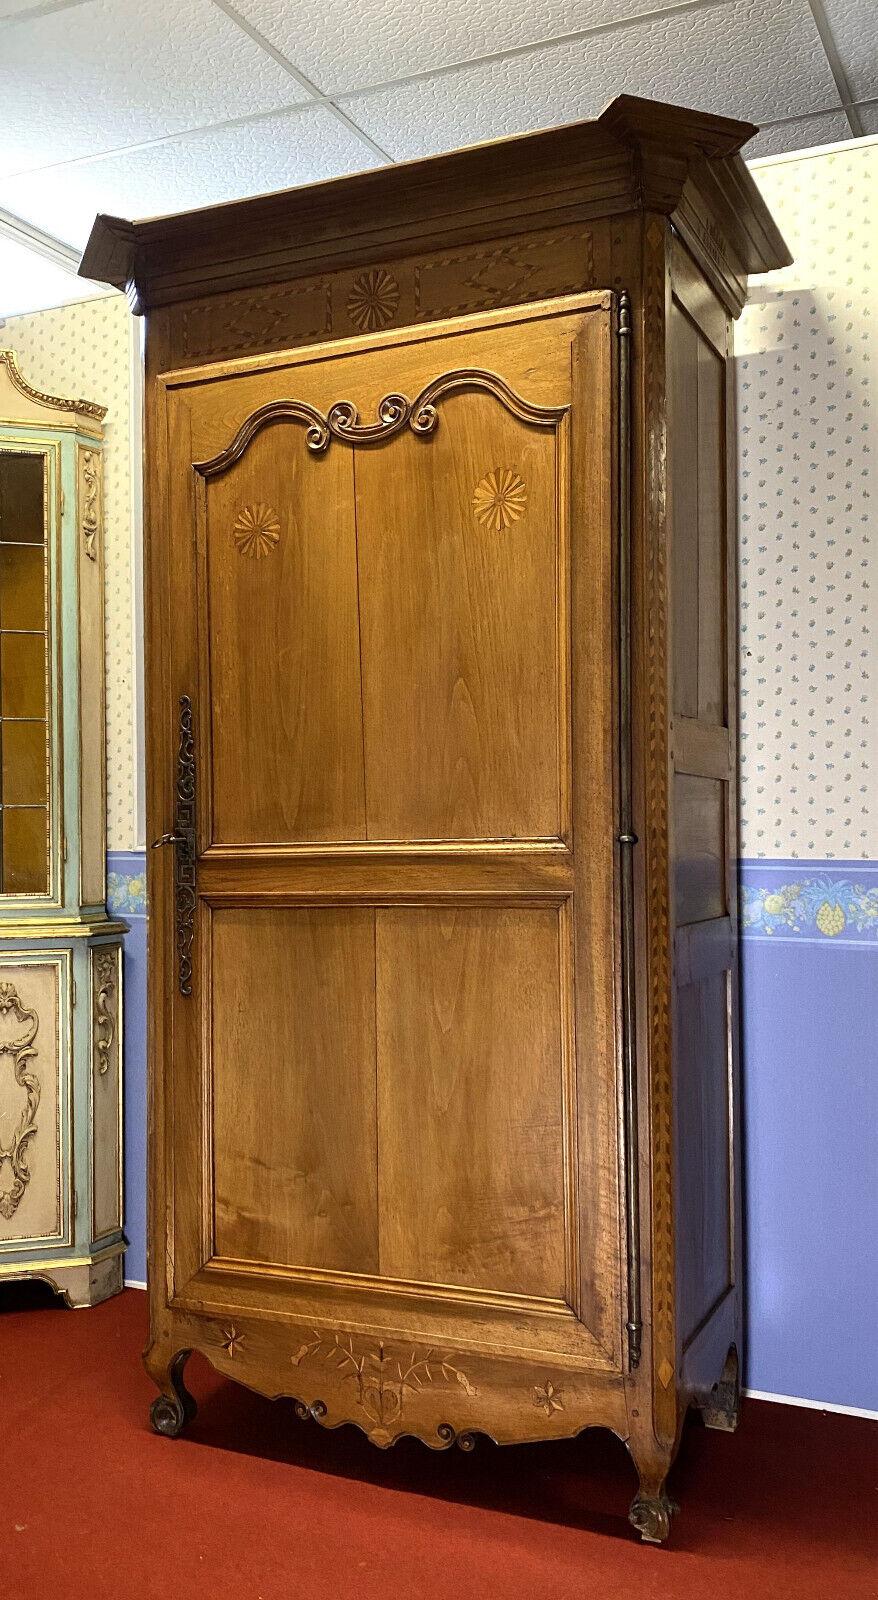 Cette superbe armoire Louis XV en marqueterie de noyer, datant d'environ 1750, rehausse votre espace de vie. Son design élégant et sa marqueterie exquise illustrent la grandeur de l'époque Louis XV, ajoutant une touche de sophistication intemporelle